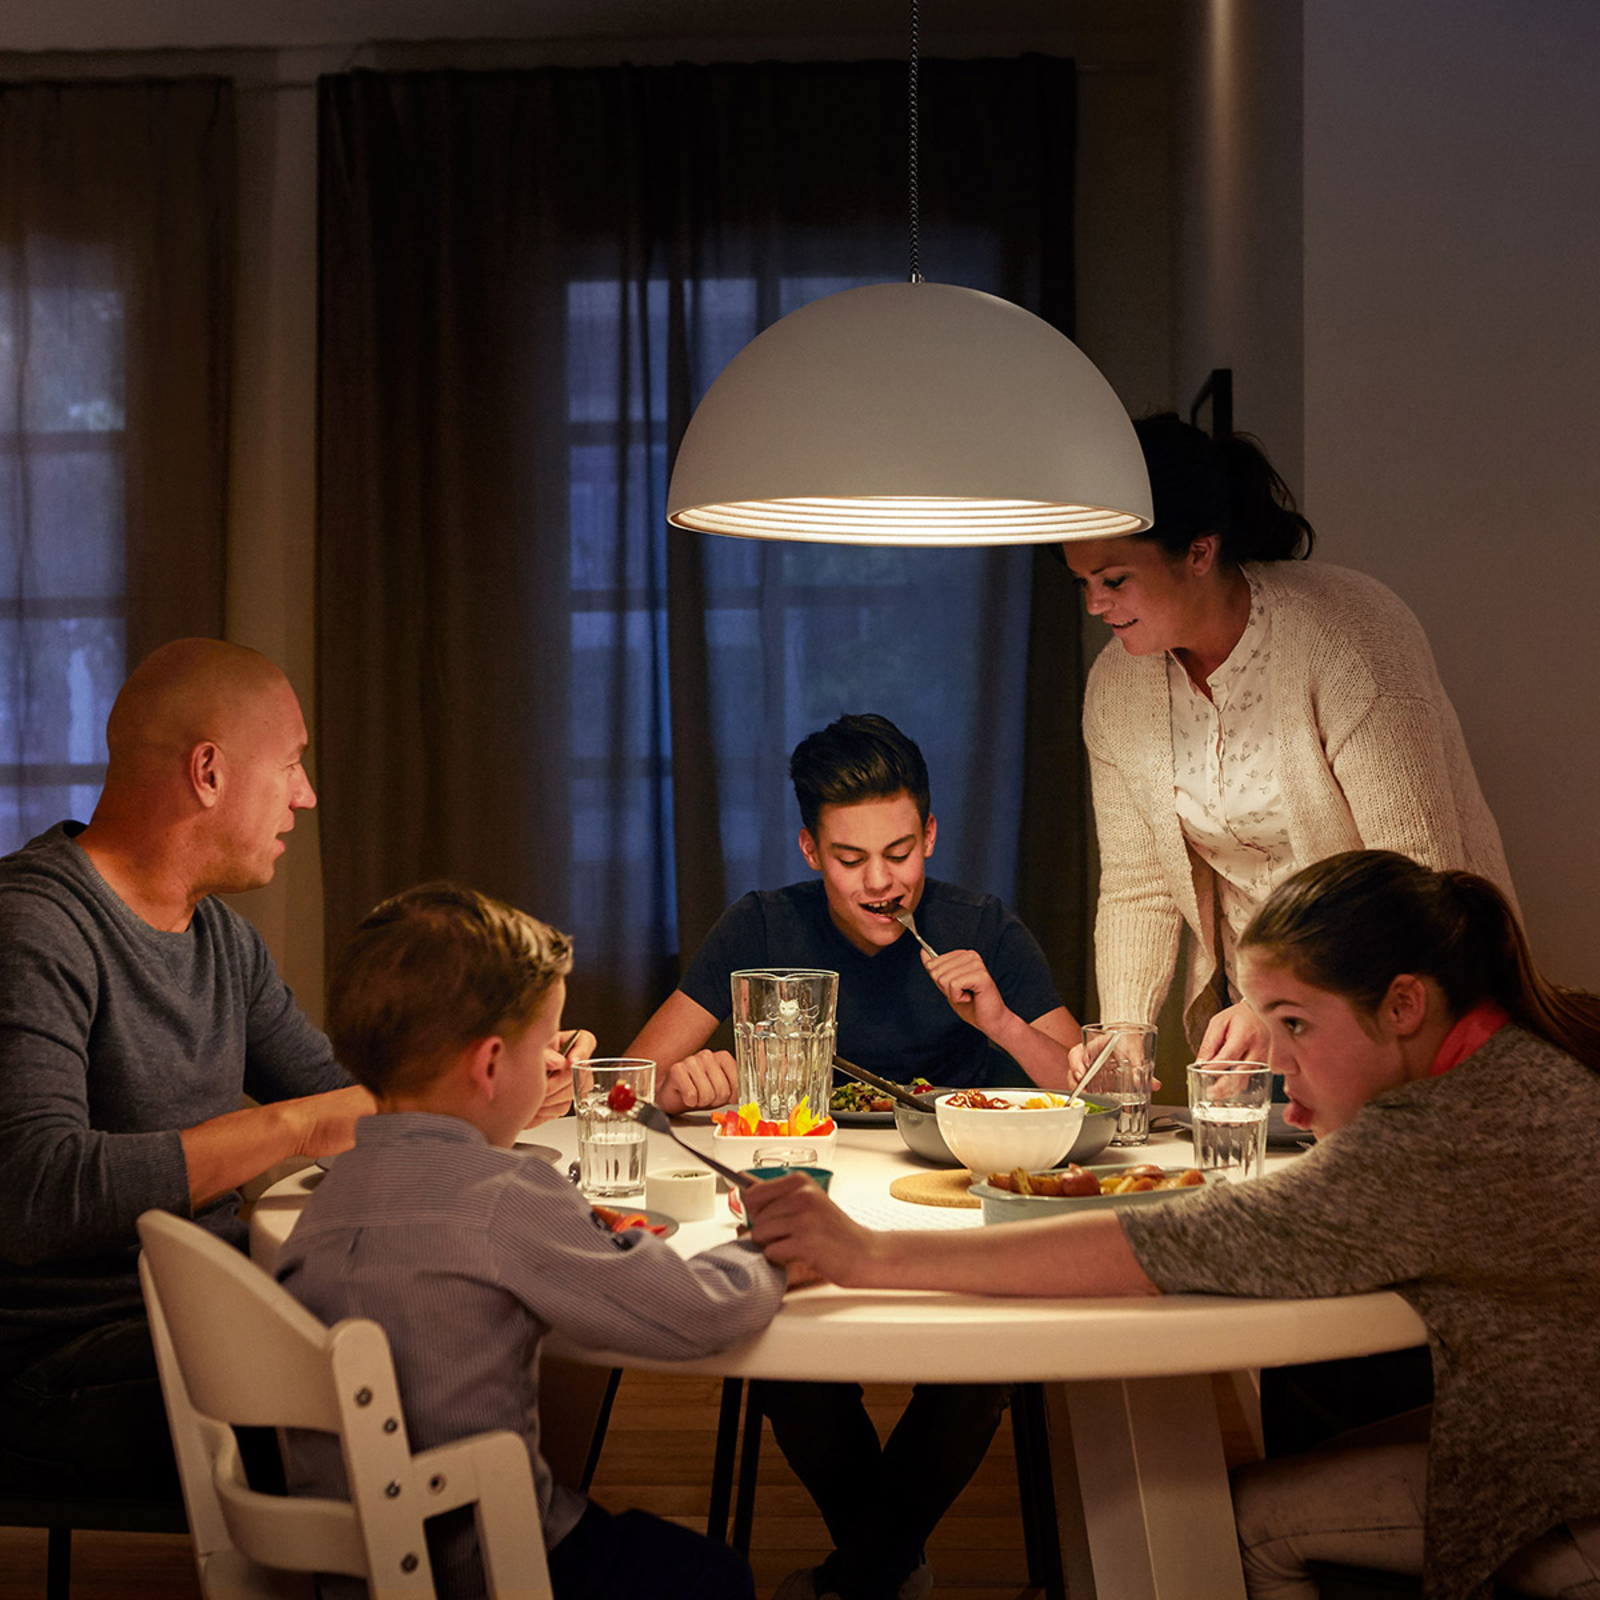 mosterd Oven Meestal Philips E27 LED lamp dag/nacht-sensor 7,5W 2.700K | Lampen24.nl